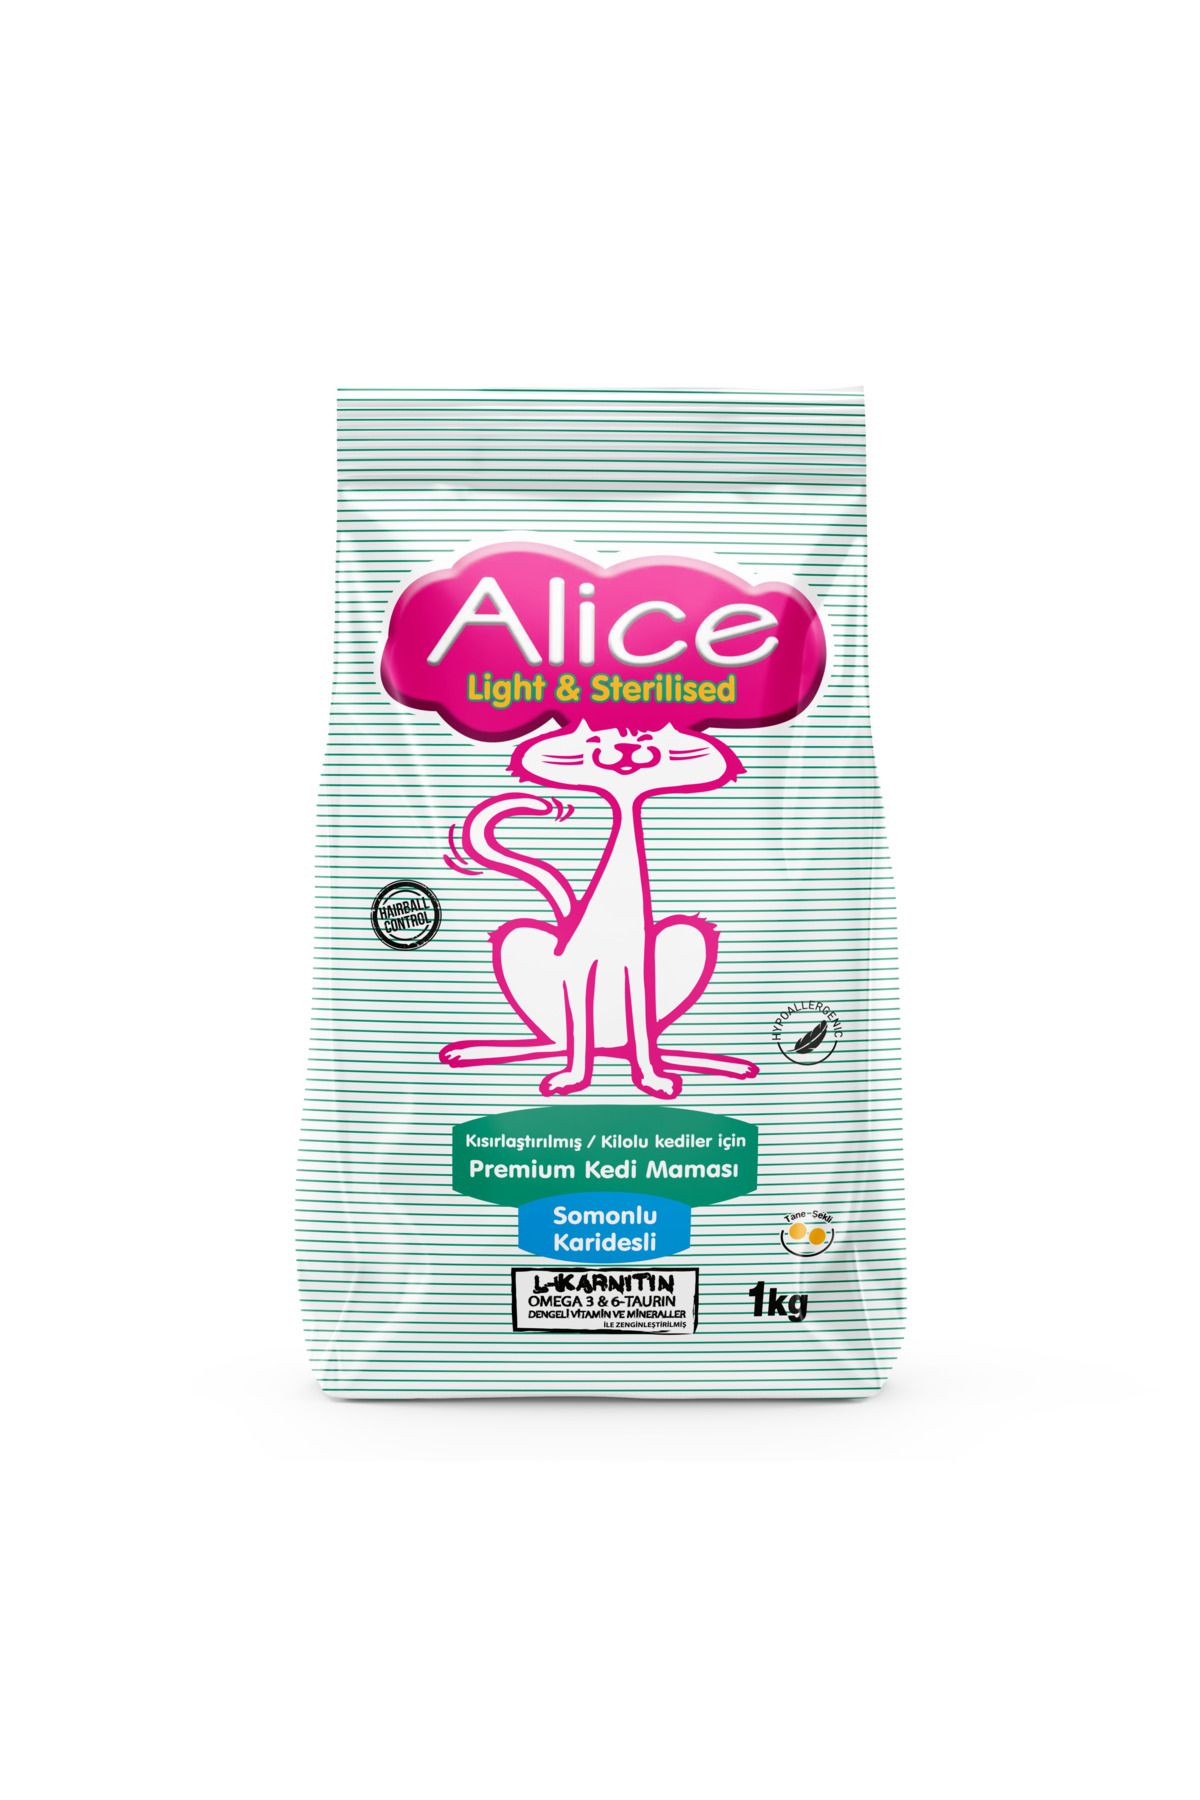 Alice Light & Sterilised - Kısırlaştırılmış / Kilolu Kediler Için Premium Mama Somonlu Karidesli 1kg